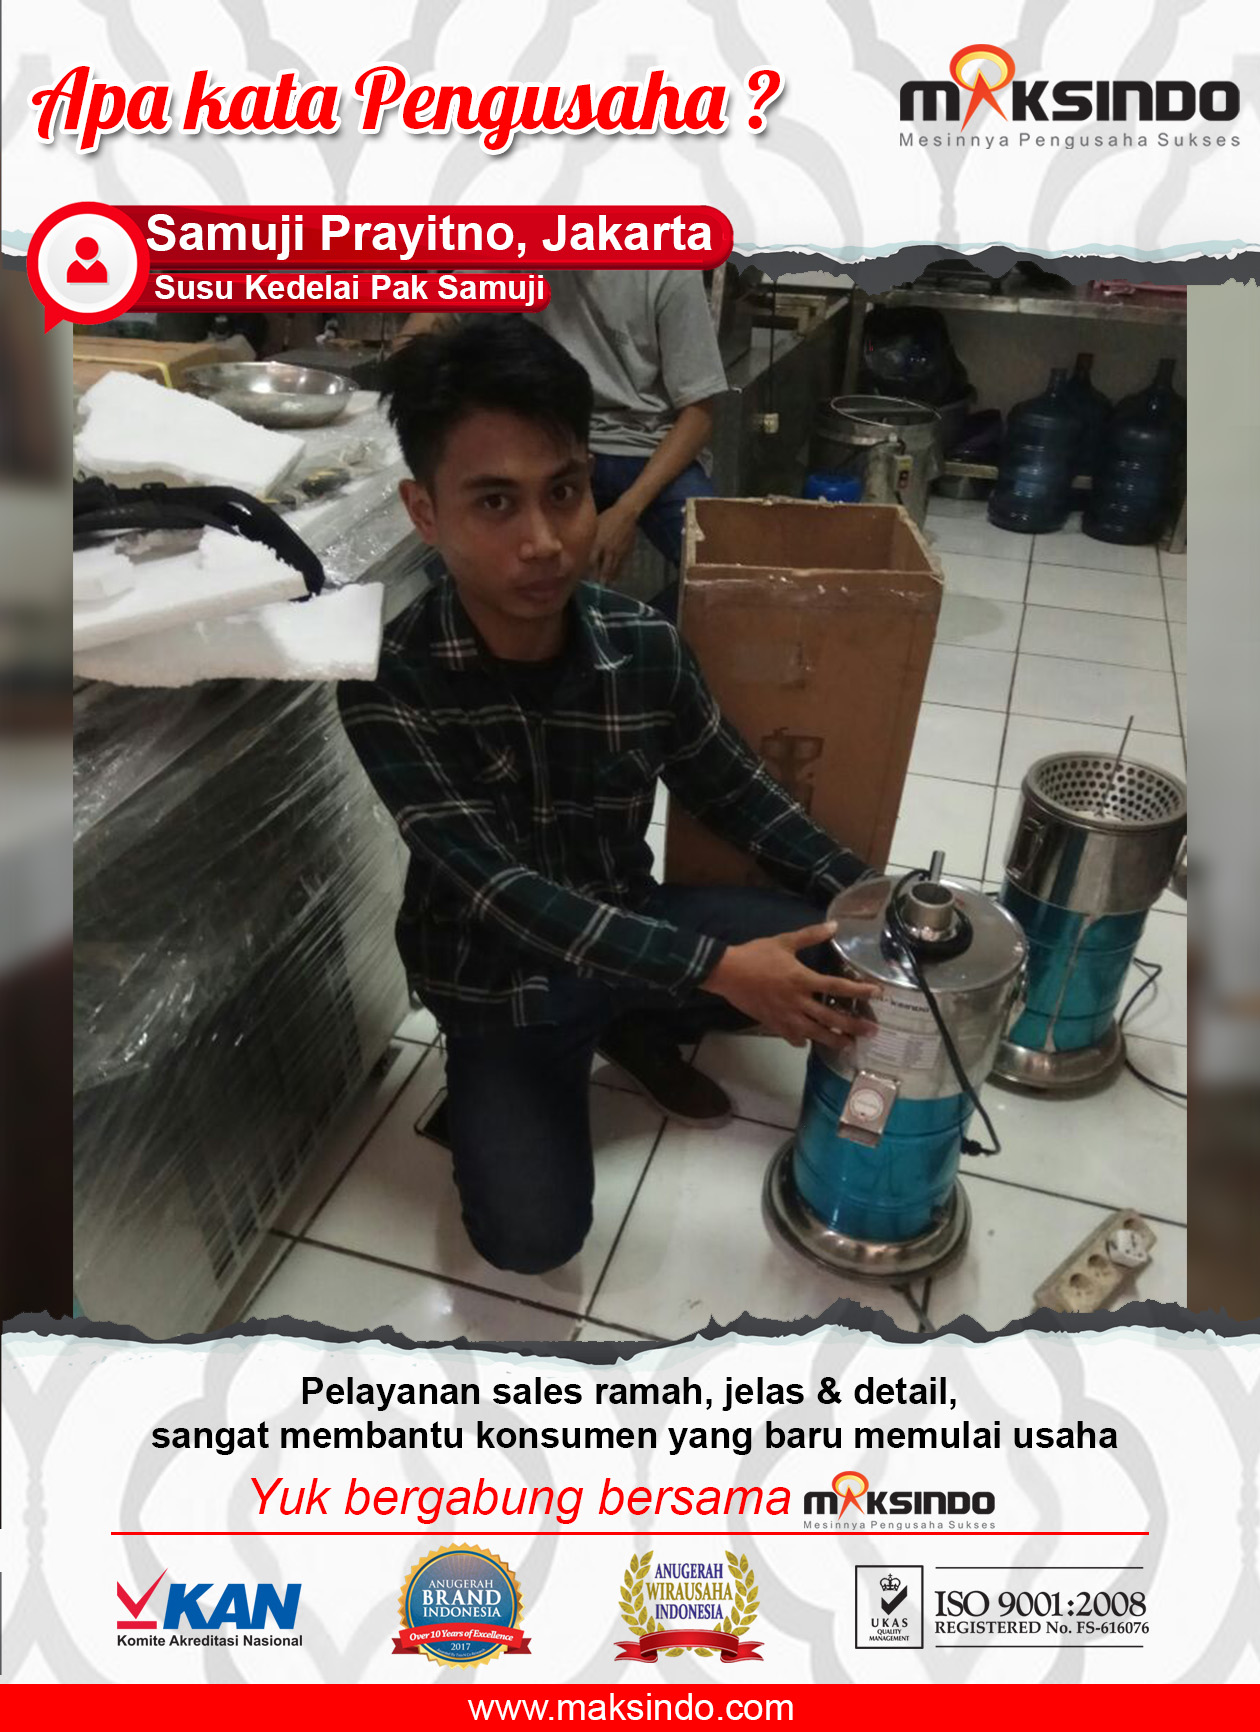 Susu Kedelai Pak Samuji : Menggunakan Mesin Susu Kedelai Maksindo Sangat Terbantu